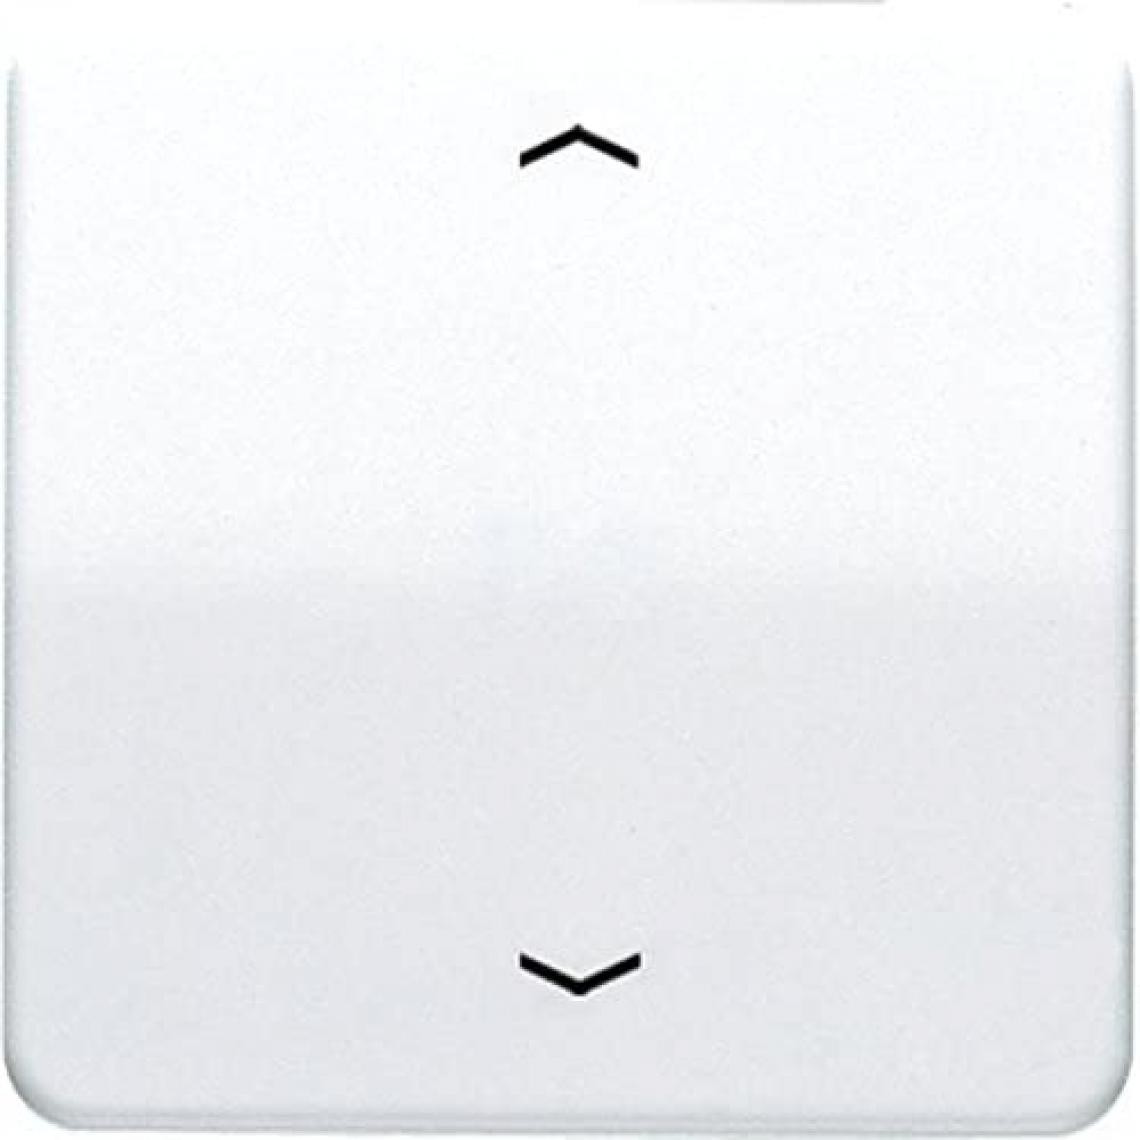 Inconnu - Bascule symbole flèche Jung CD590PWW 1 prise Cache blanc-alpin 1 pc(s) - Interrupteurs et prises étanches